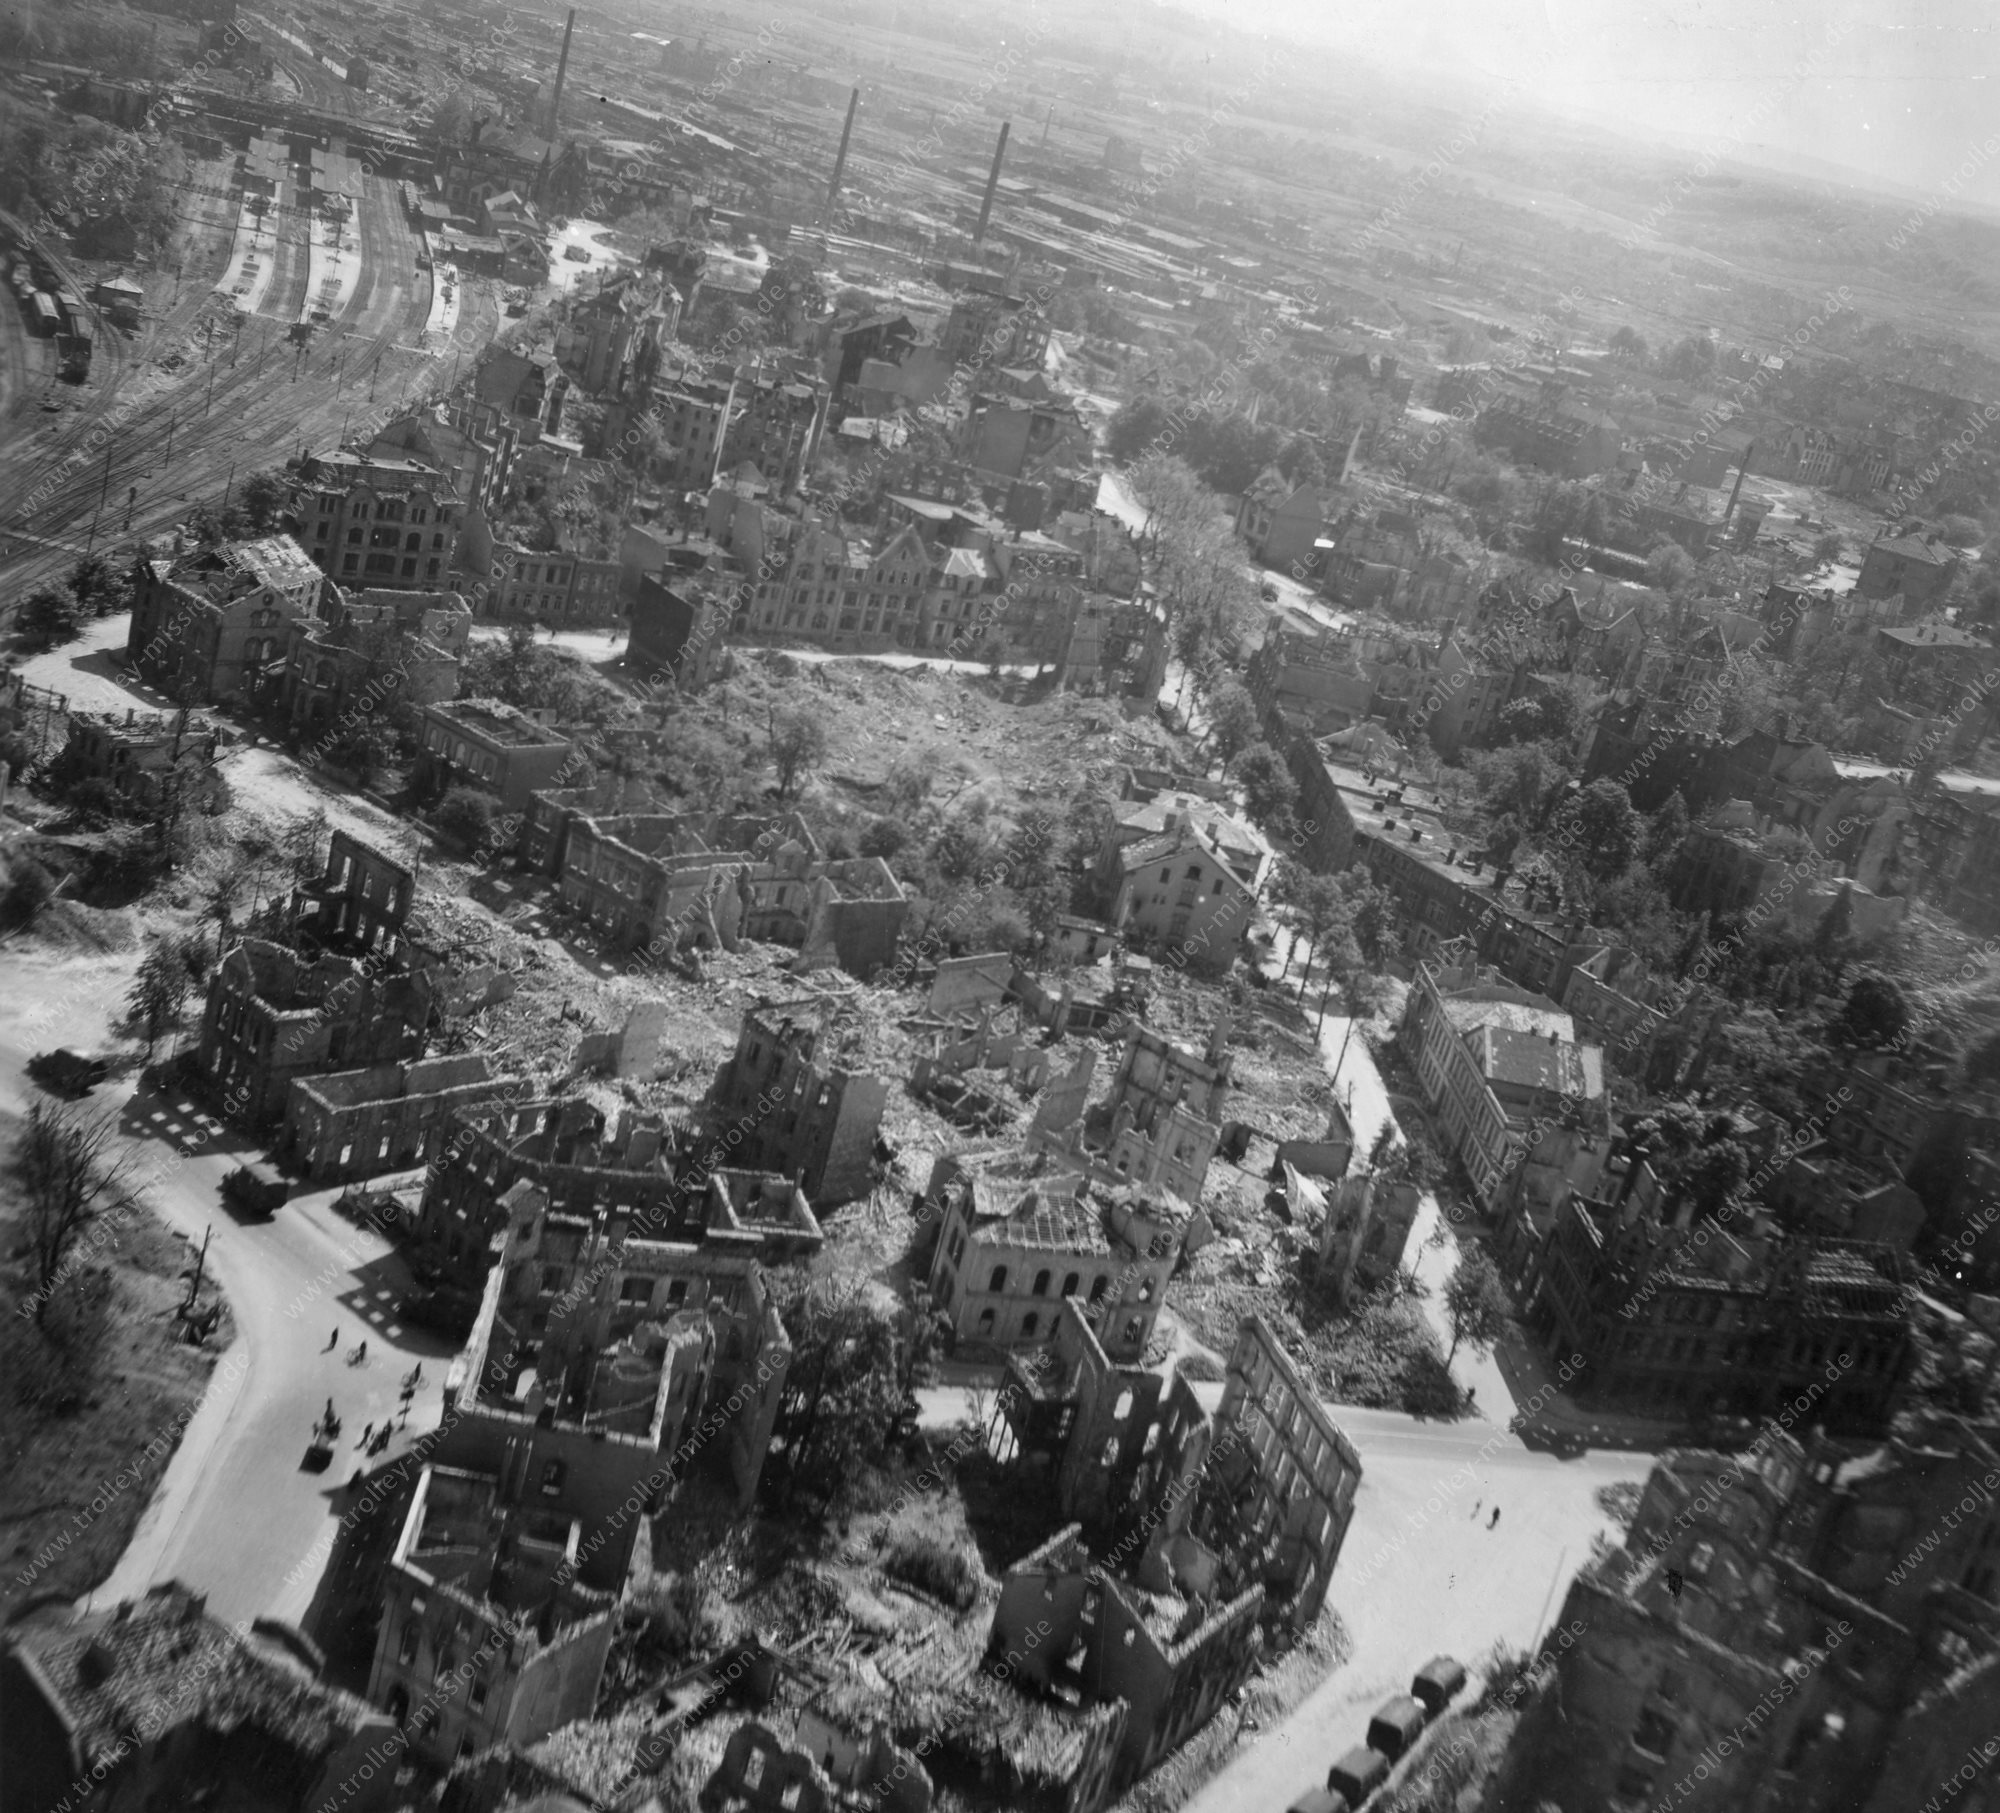 Luftbild vom Bahnhof bzw. Hauptbahnhof Osnabrück nach dem Zweiten Weltkrieg